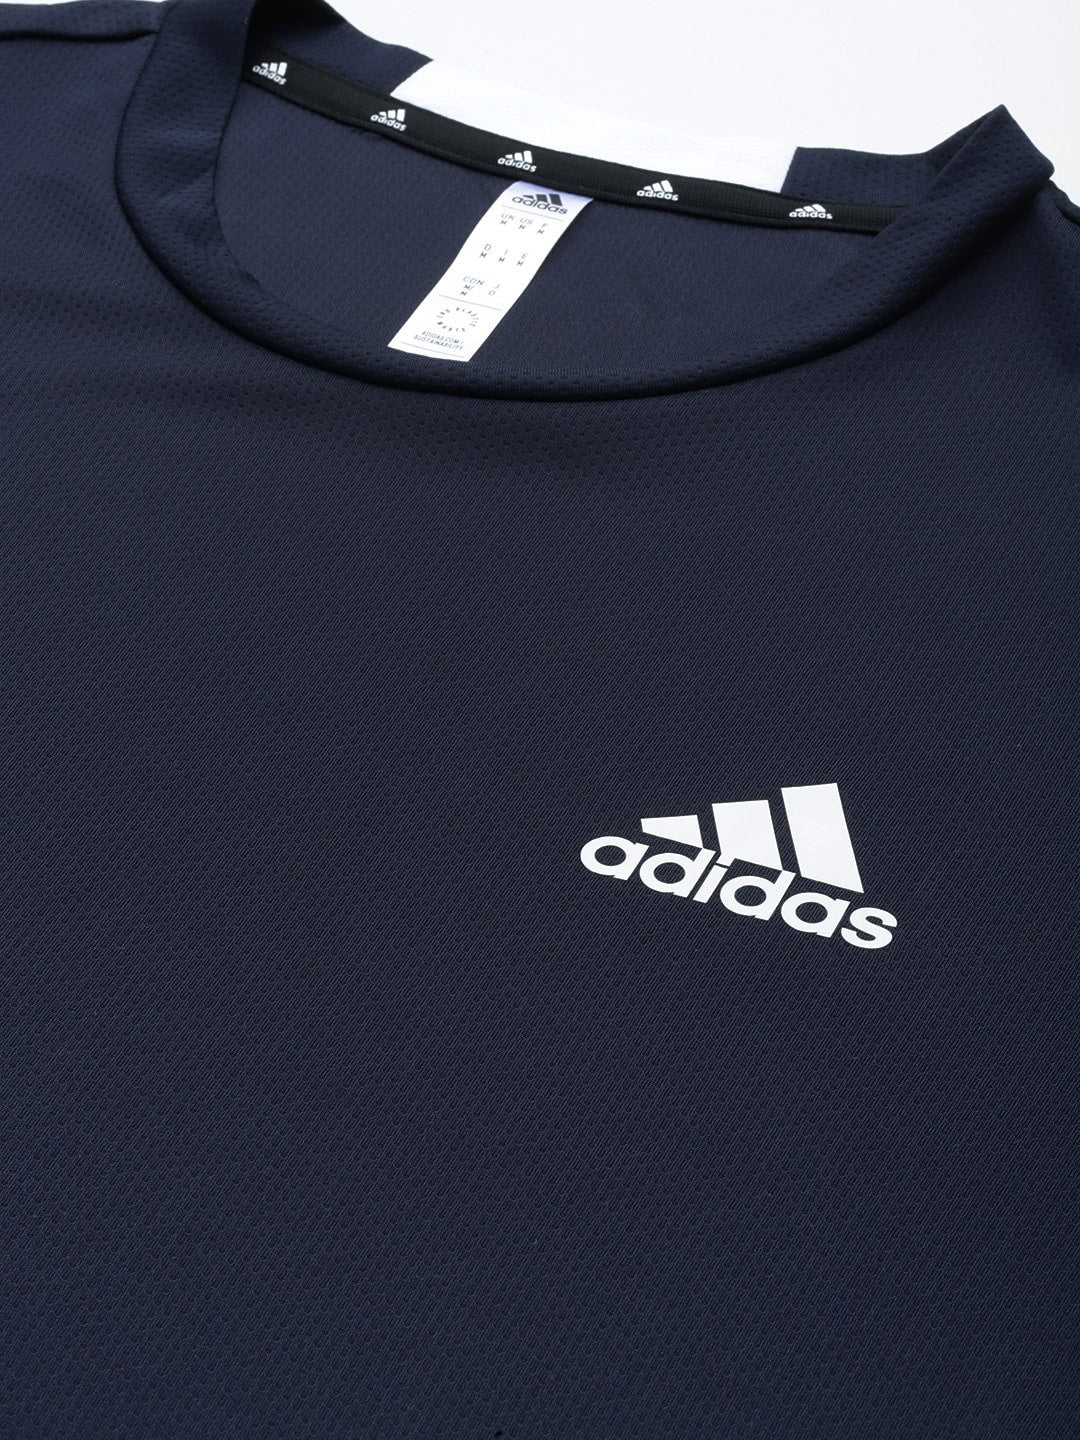 Adidas Men D4M Training T-shirt - Distacart